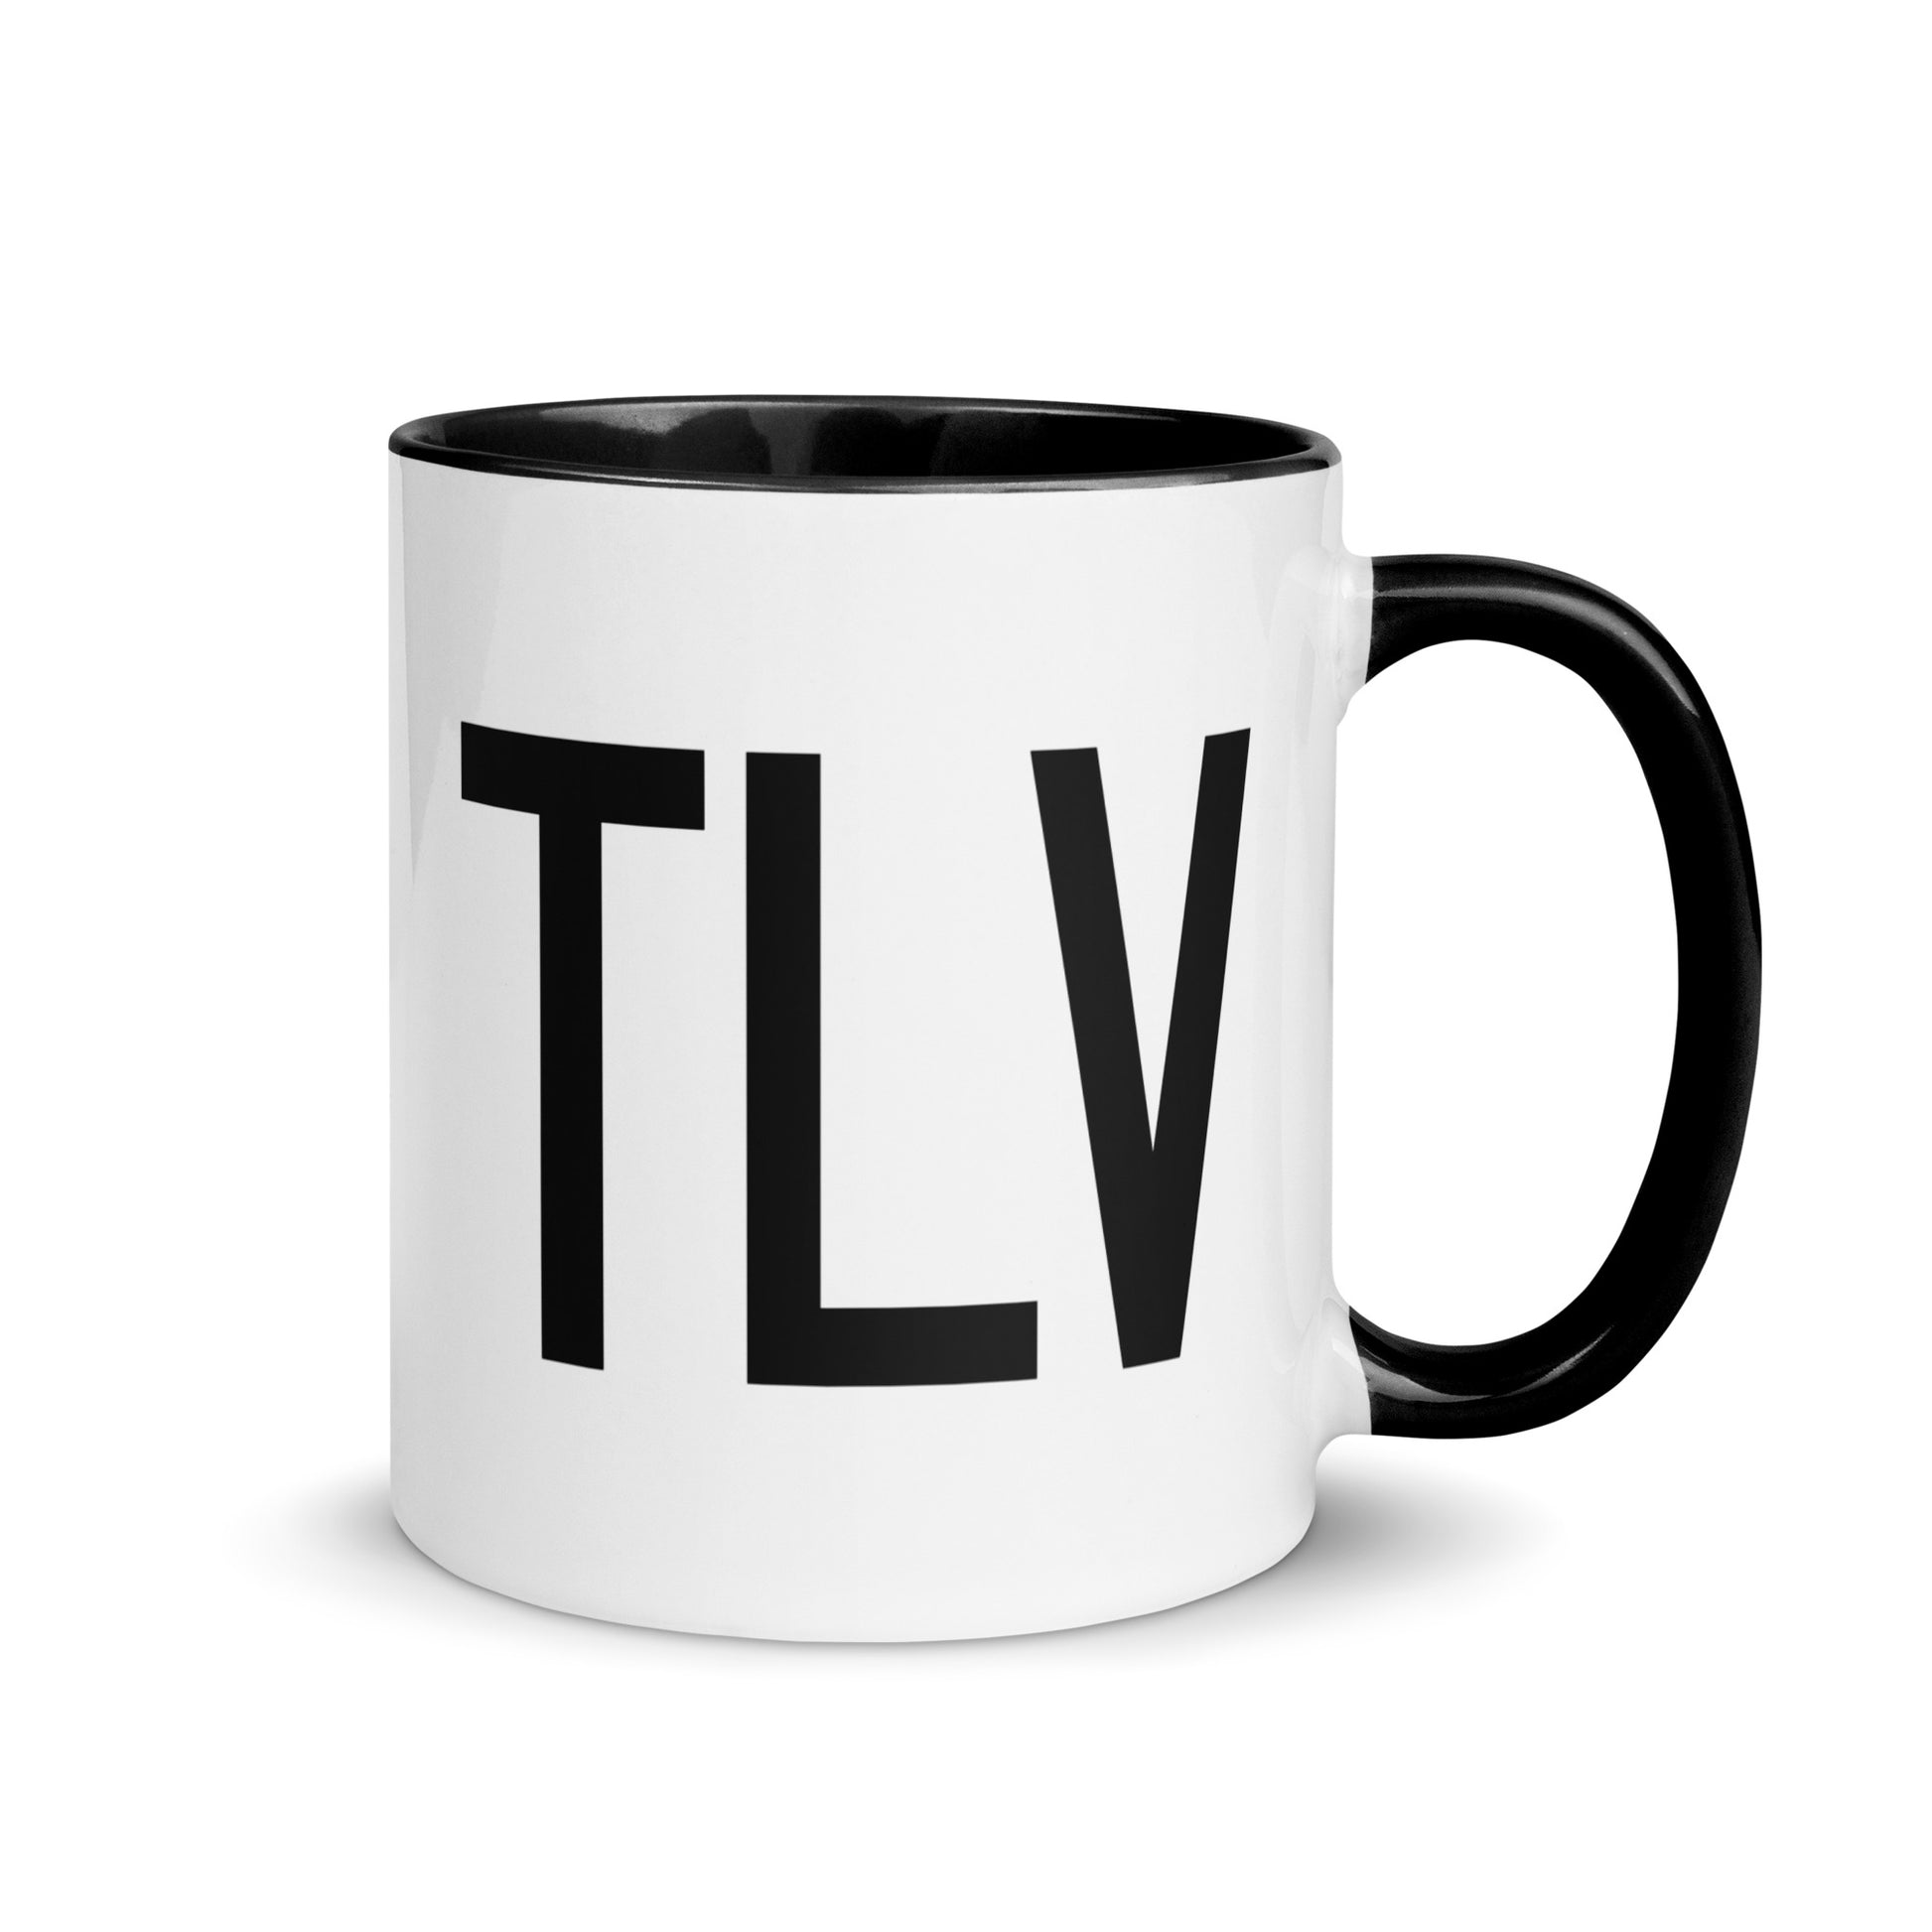 Airport Code Coffee Mug - Black • TLV Tel Aviv • YHM Designs - Image 01